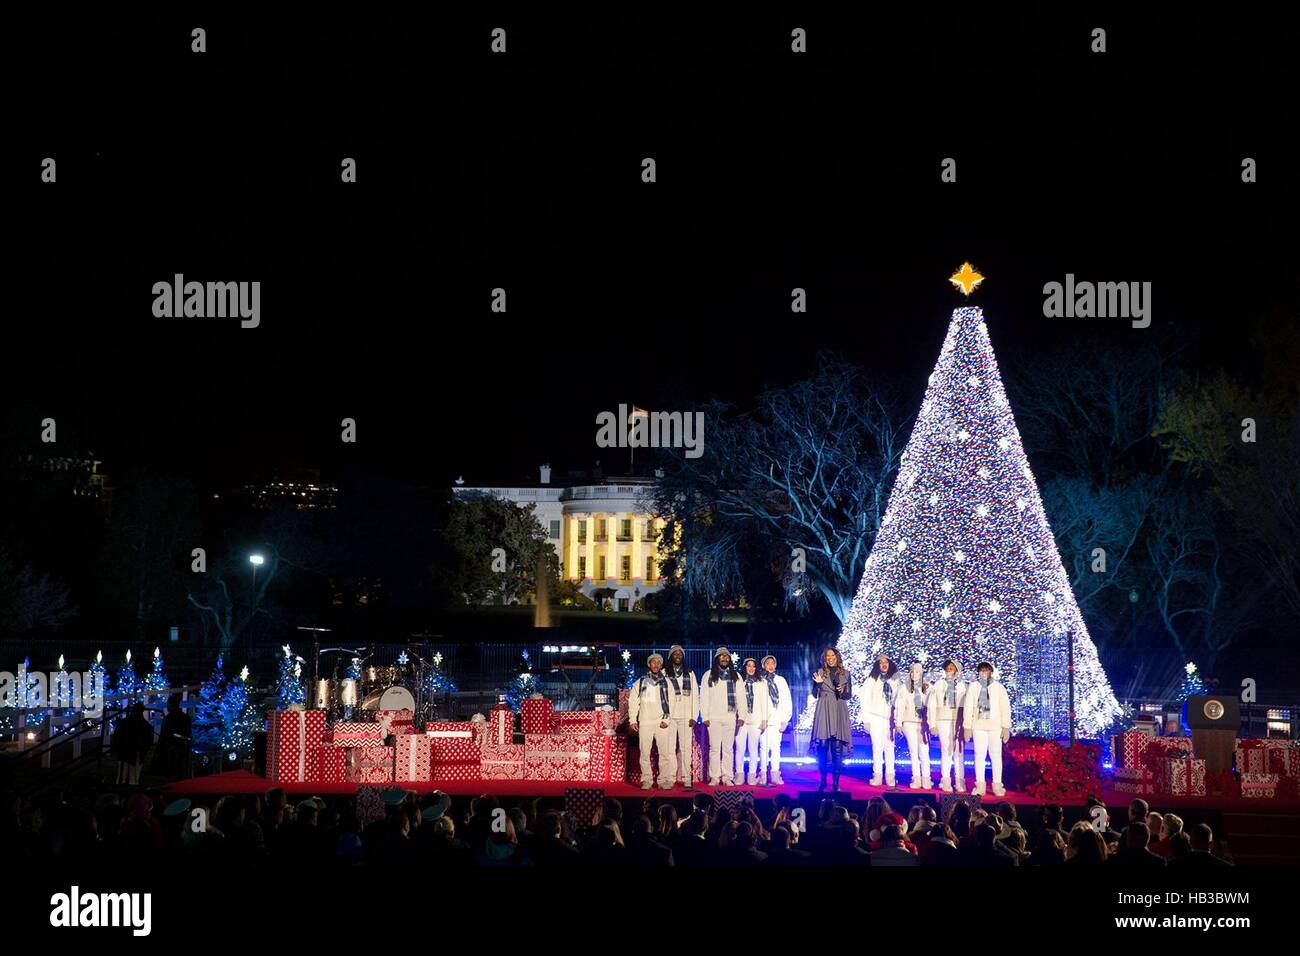 Yolanda Adams légende évangile effectue au cours de la cérémonie d'illumination de l'arbre de Noël national à l'Ellipse 1 décembre 2016 à Washington, DC. Banque D'Images